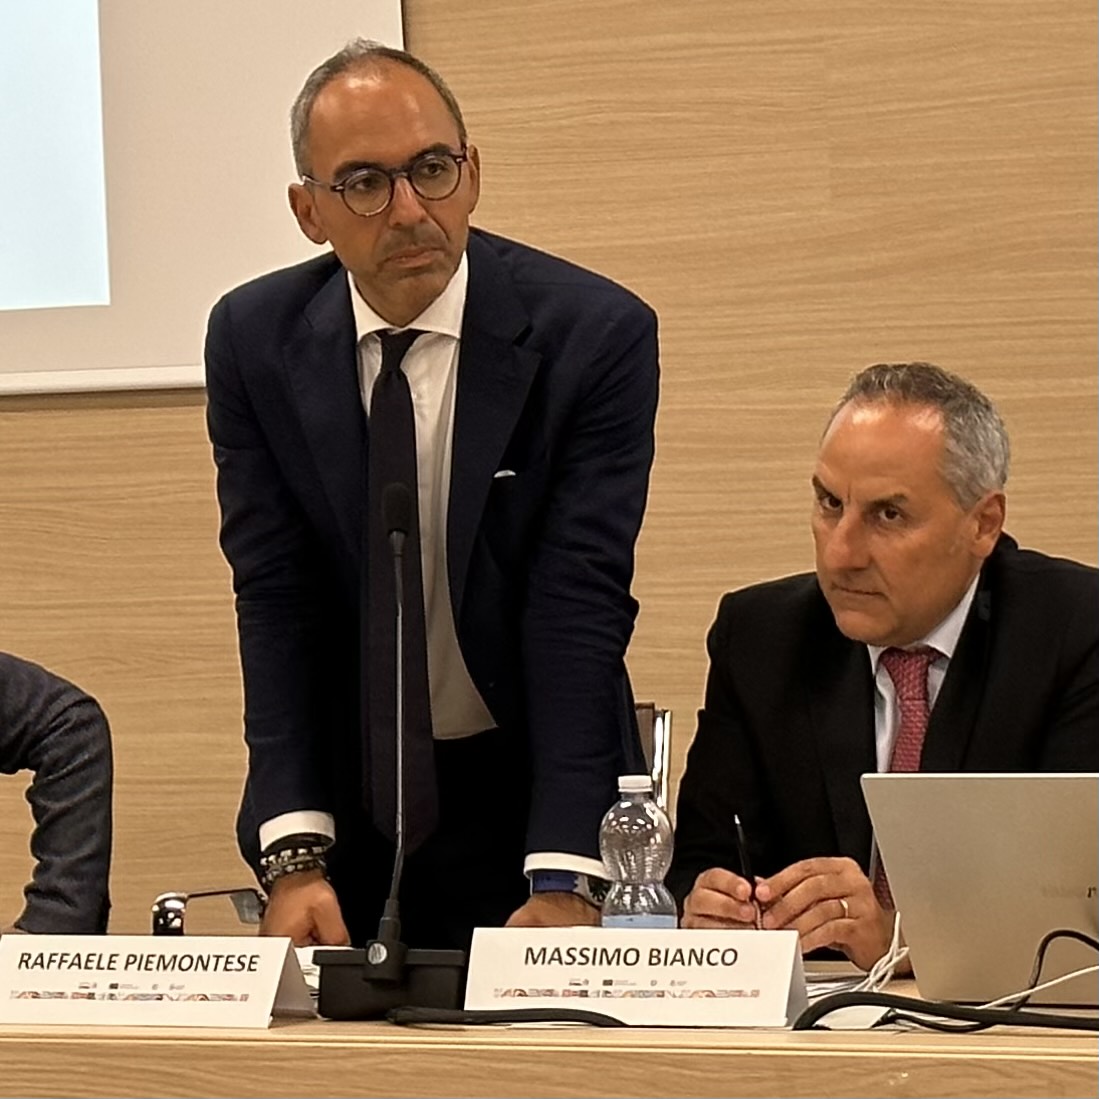 Galleria Piemontese: “I concetti chiave dell’Agenda 2030 applicati dalla Regione Puglia alla mobilità sostenibile” - Diapositiva 1 di 2